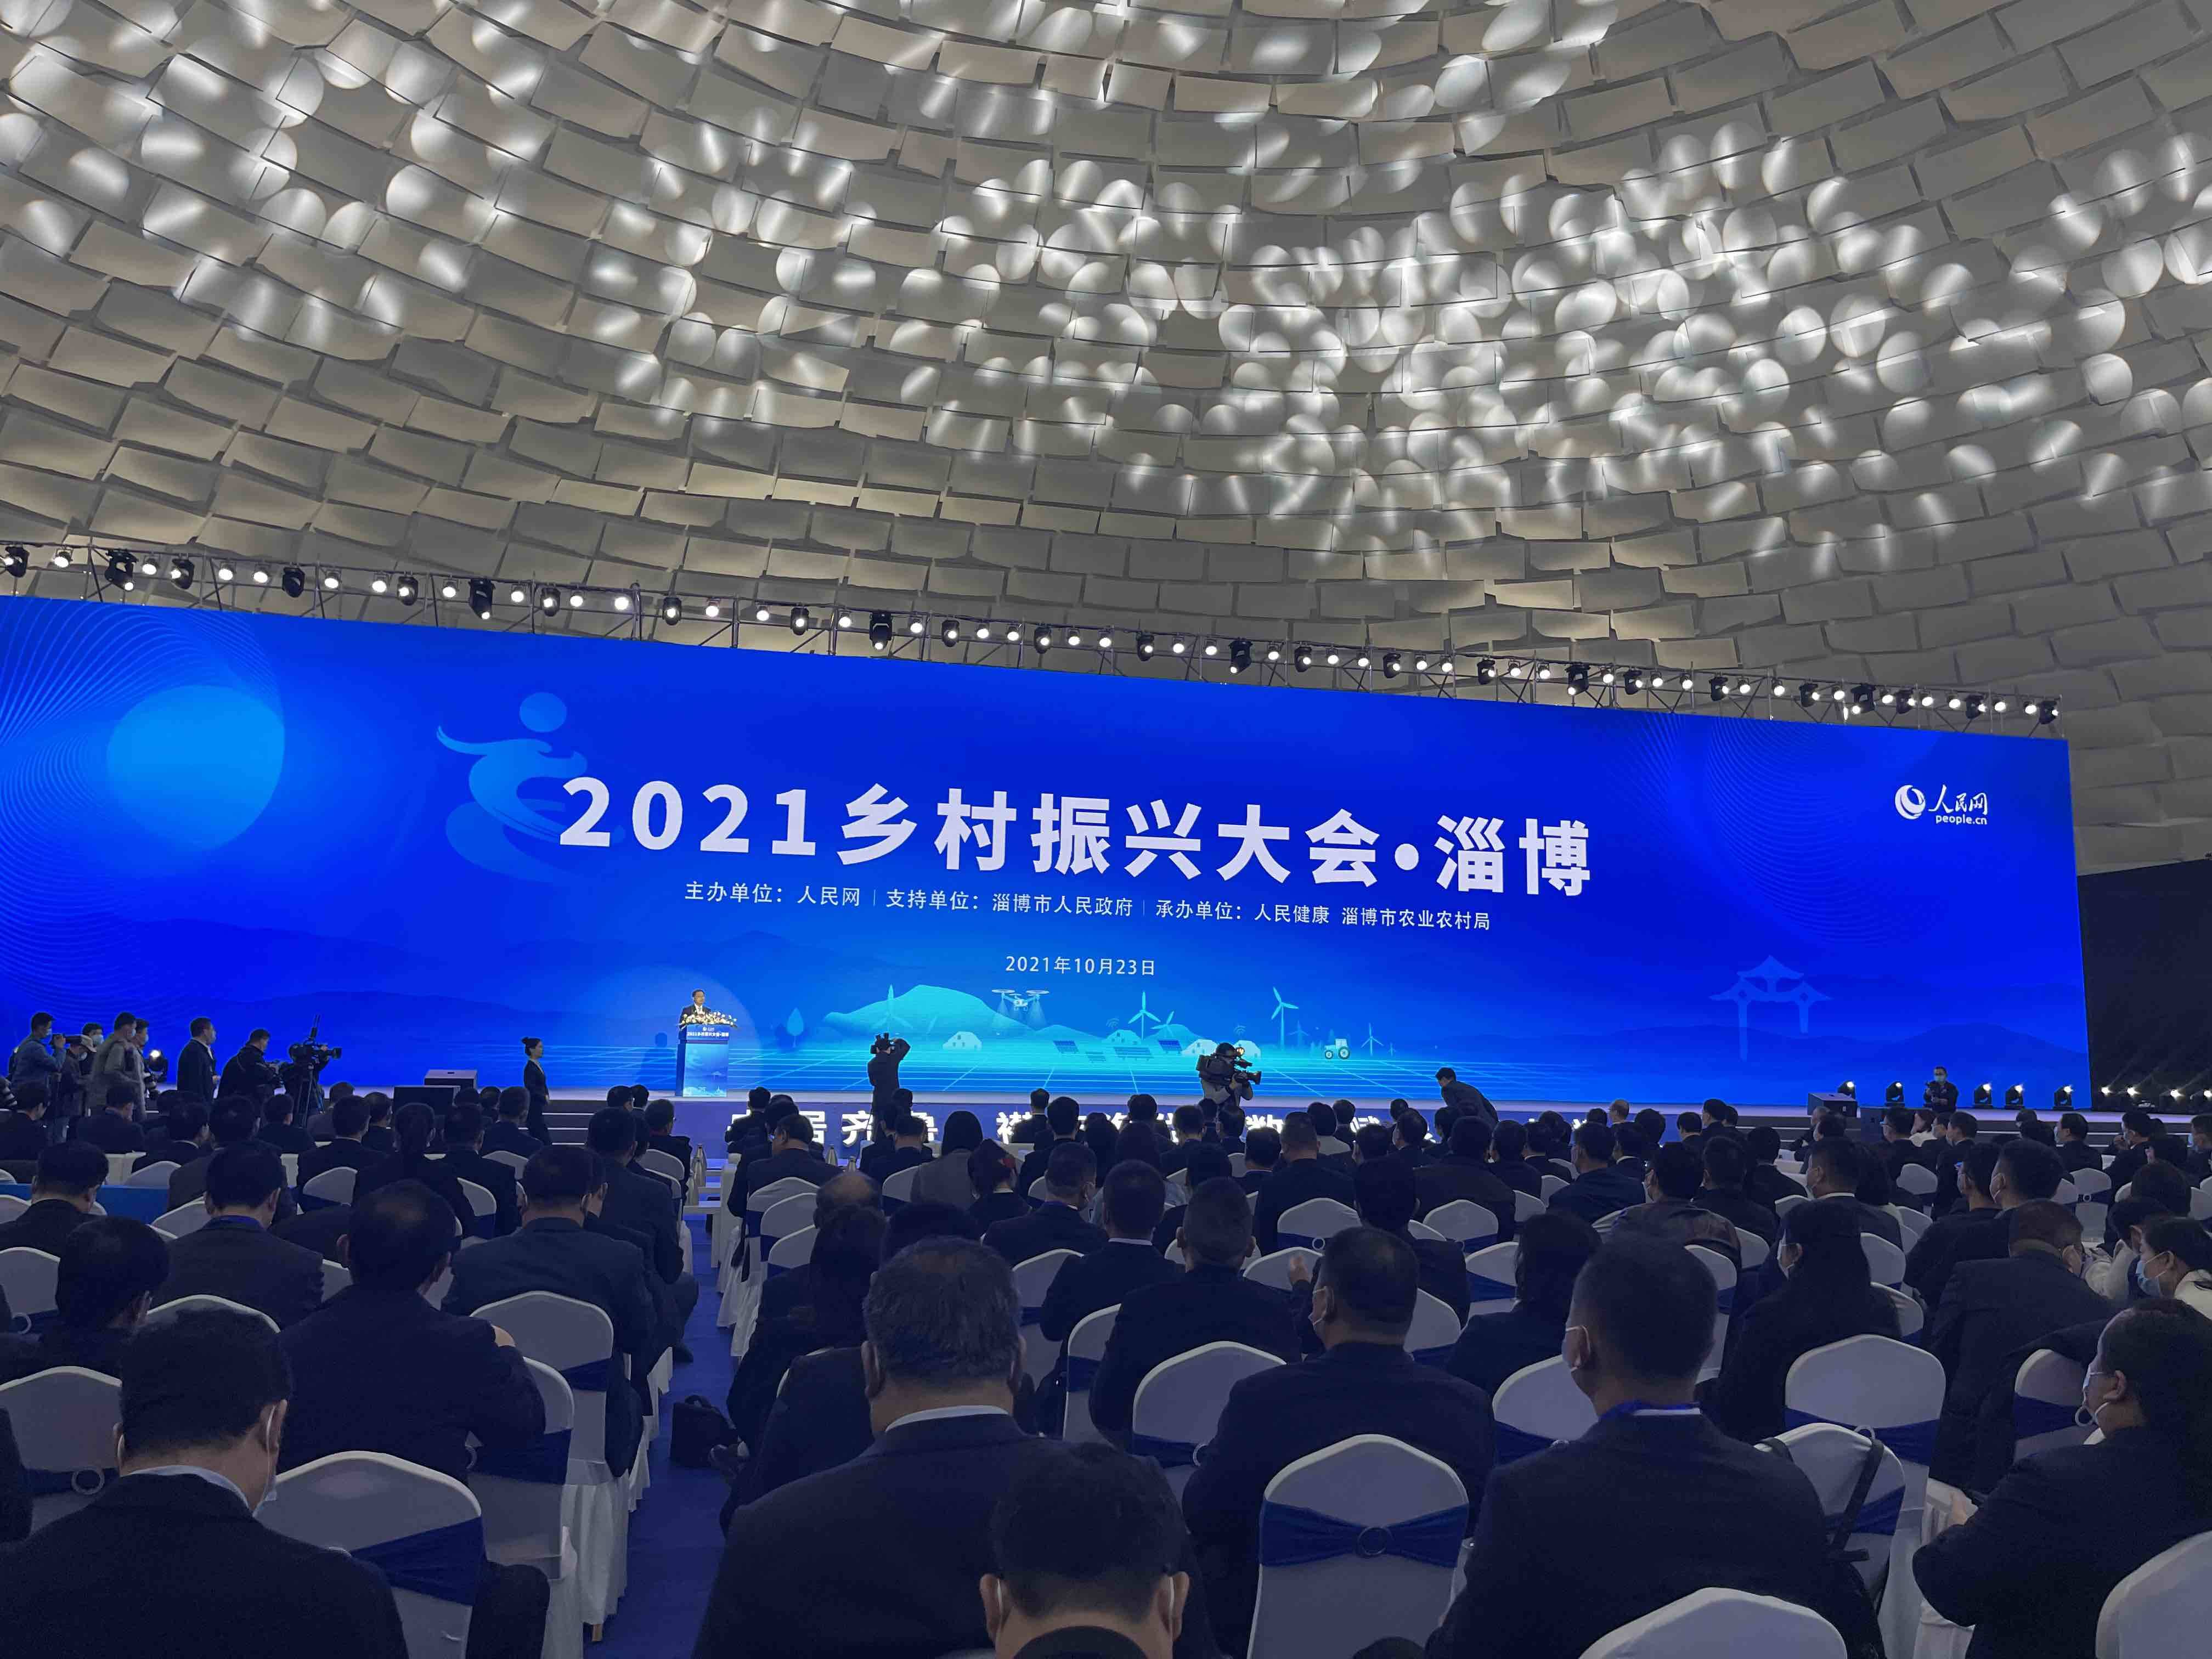 2021乡村振兴大会在淄博开幕